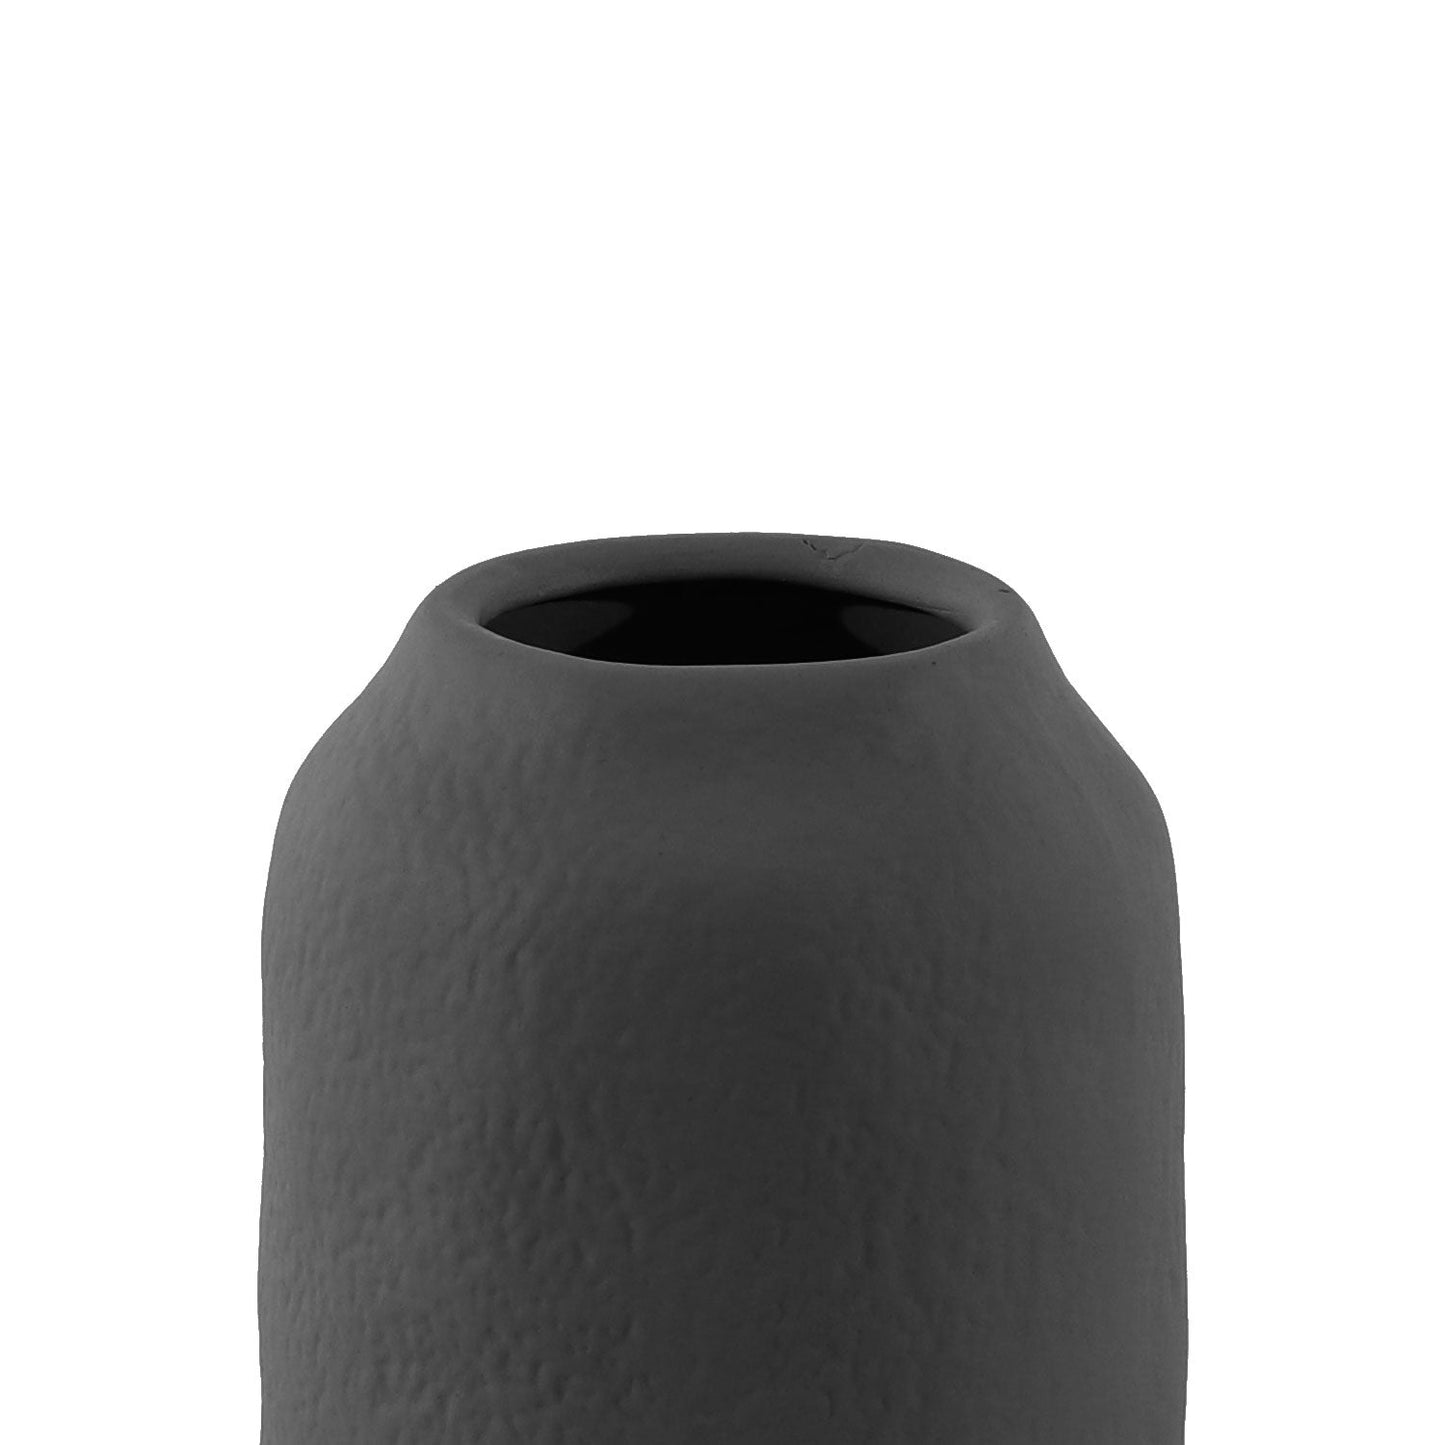 Vaso Decorativo em Cerâmica Pan Preto 14 cm